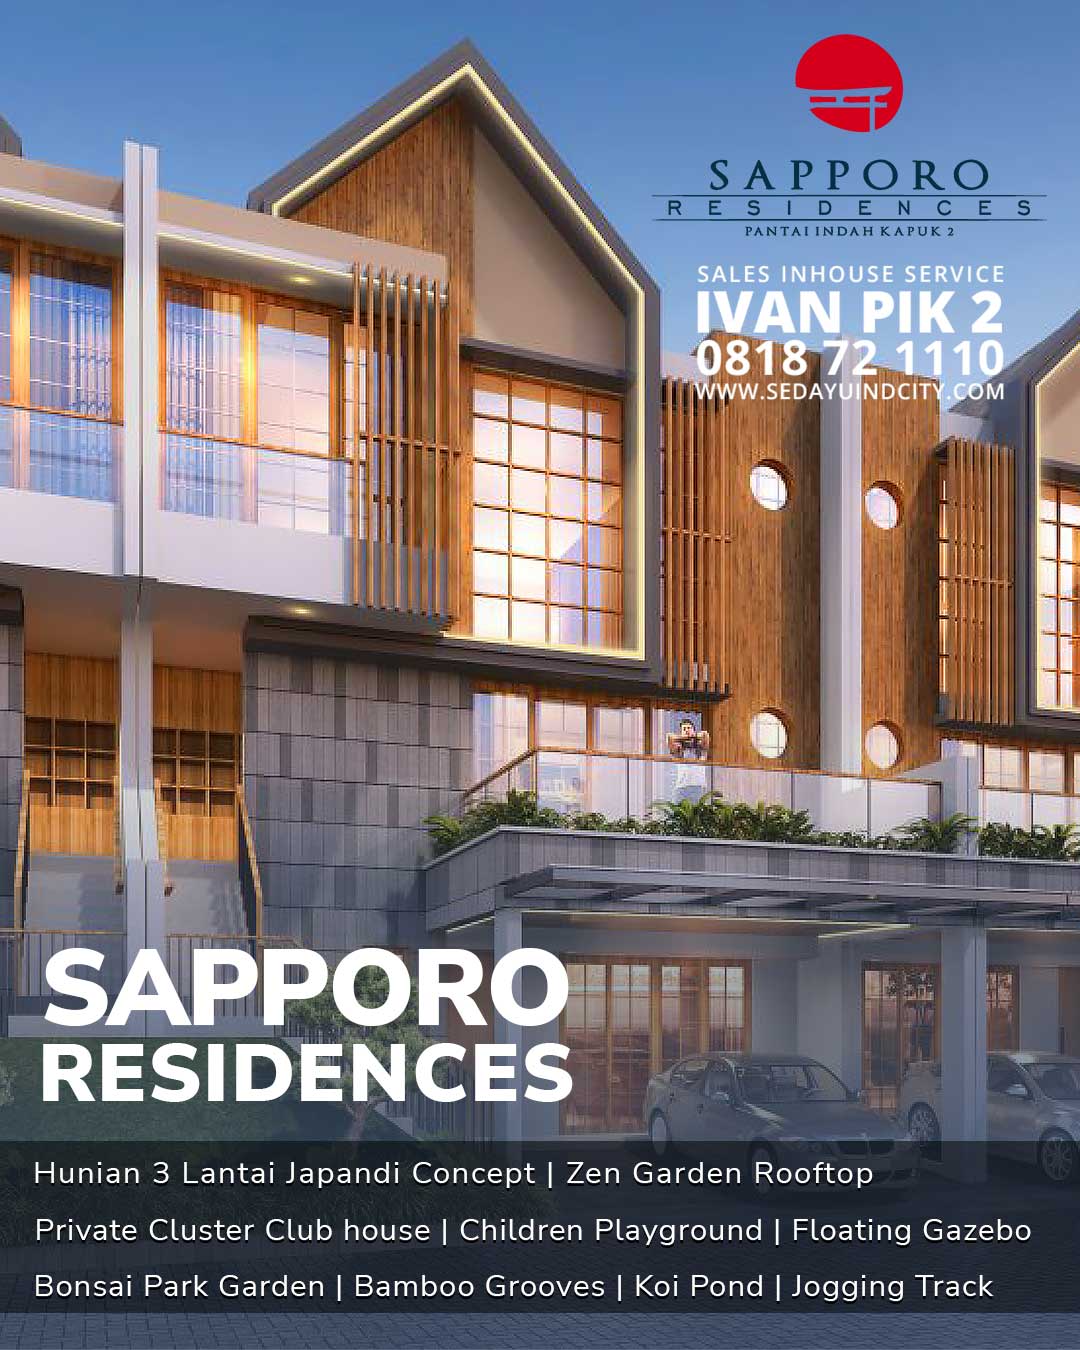 Sapporo Residences PIK 2 hadir dengan konsep Jepang terbaik